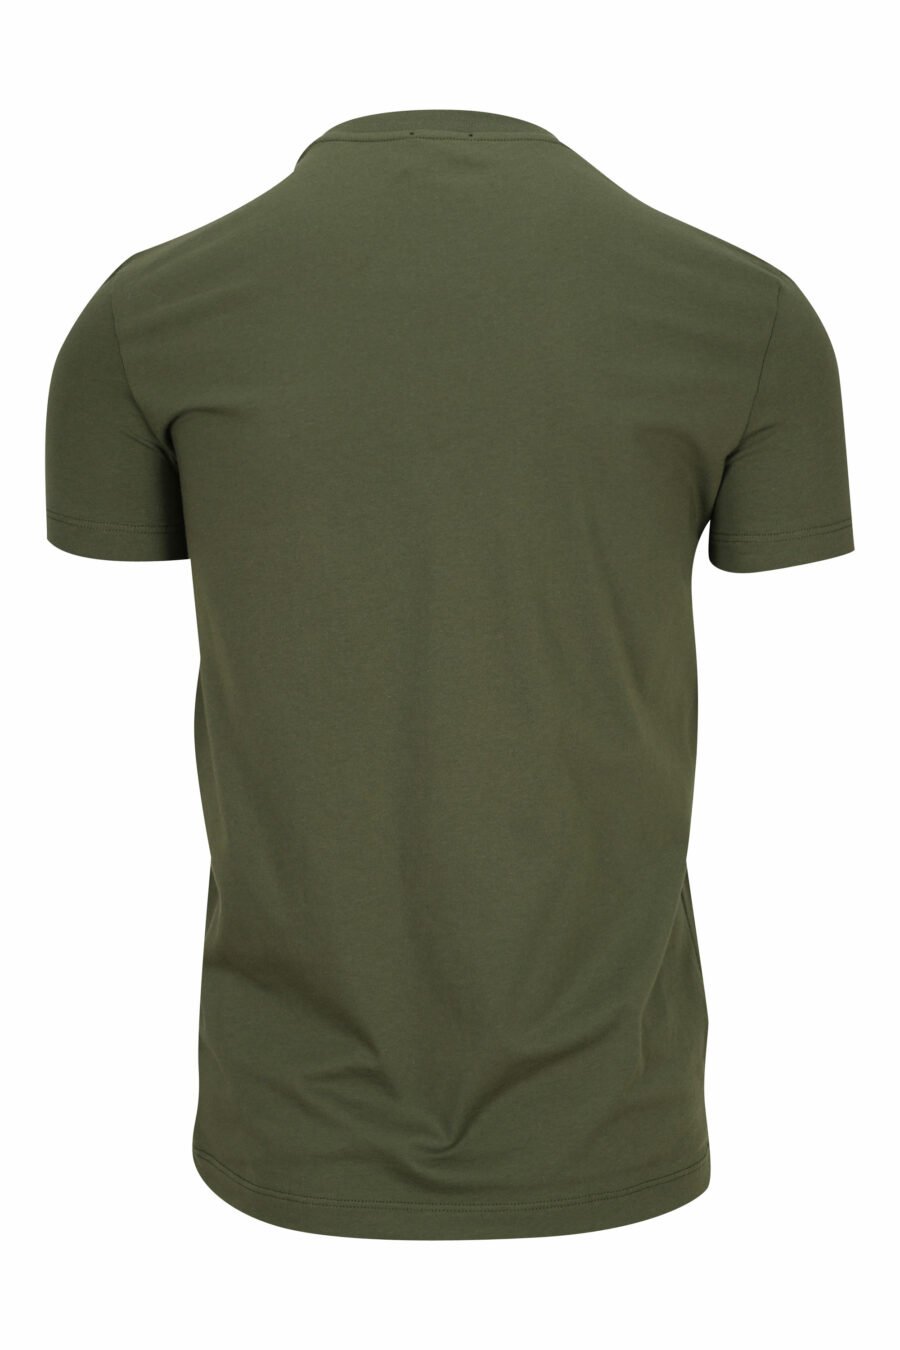 T-shirt verde militar com roupa interior branca minilogue - 8032674811622 1